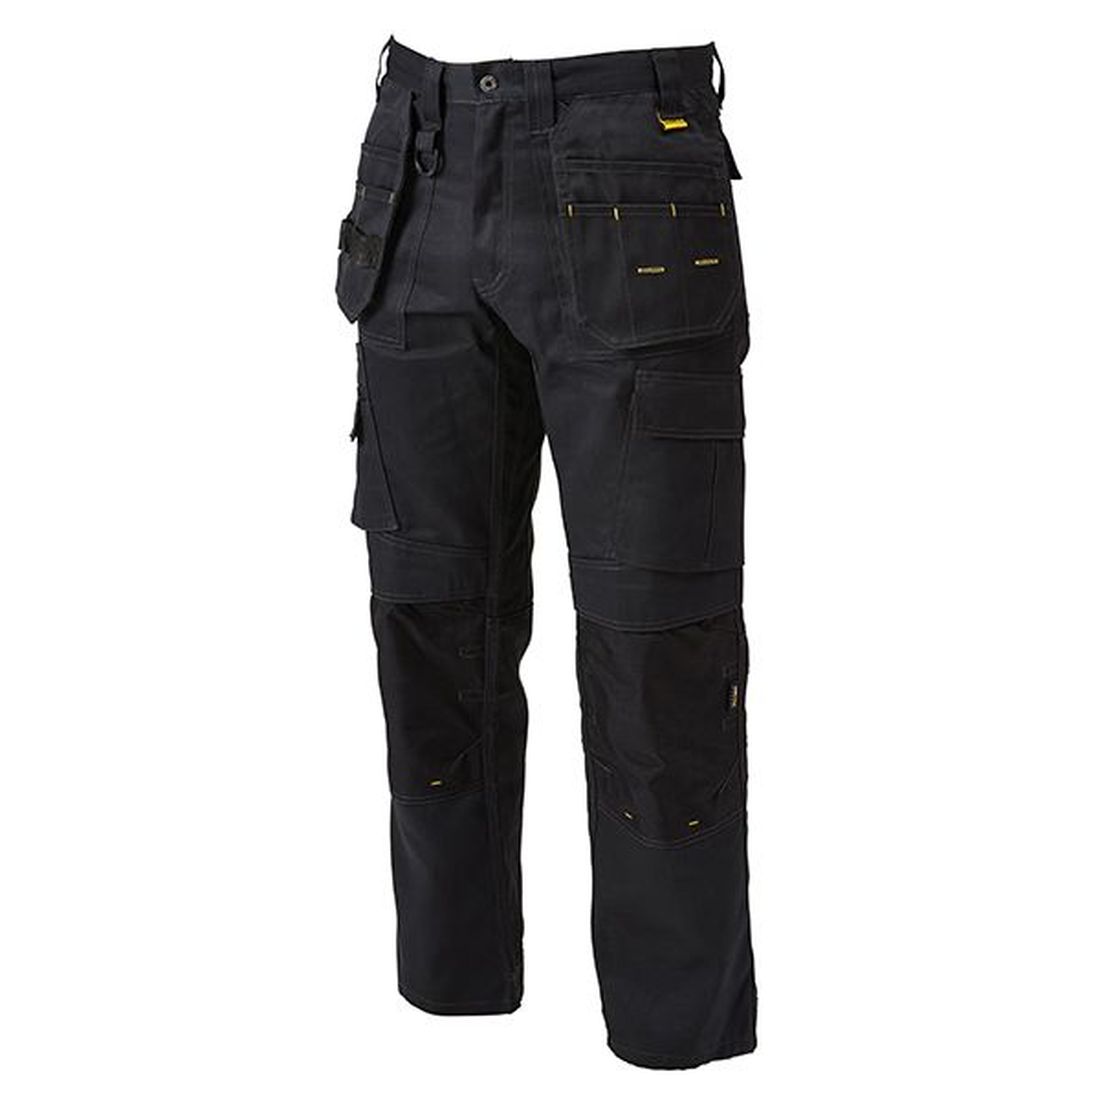 DEWALT Pro Tradesman Black Trousers Waist 34in Leg 29in                                